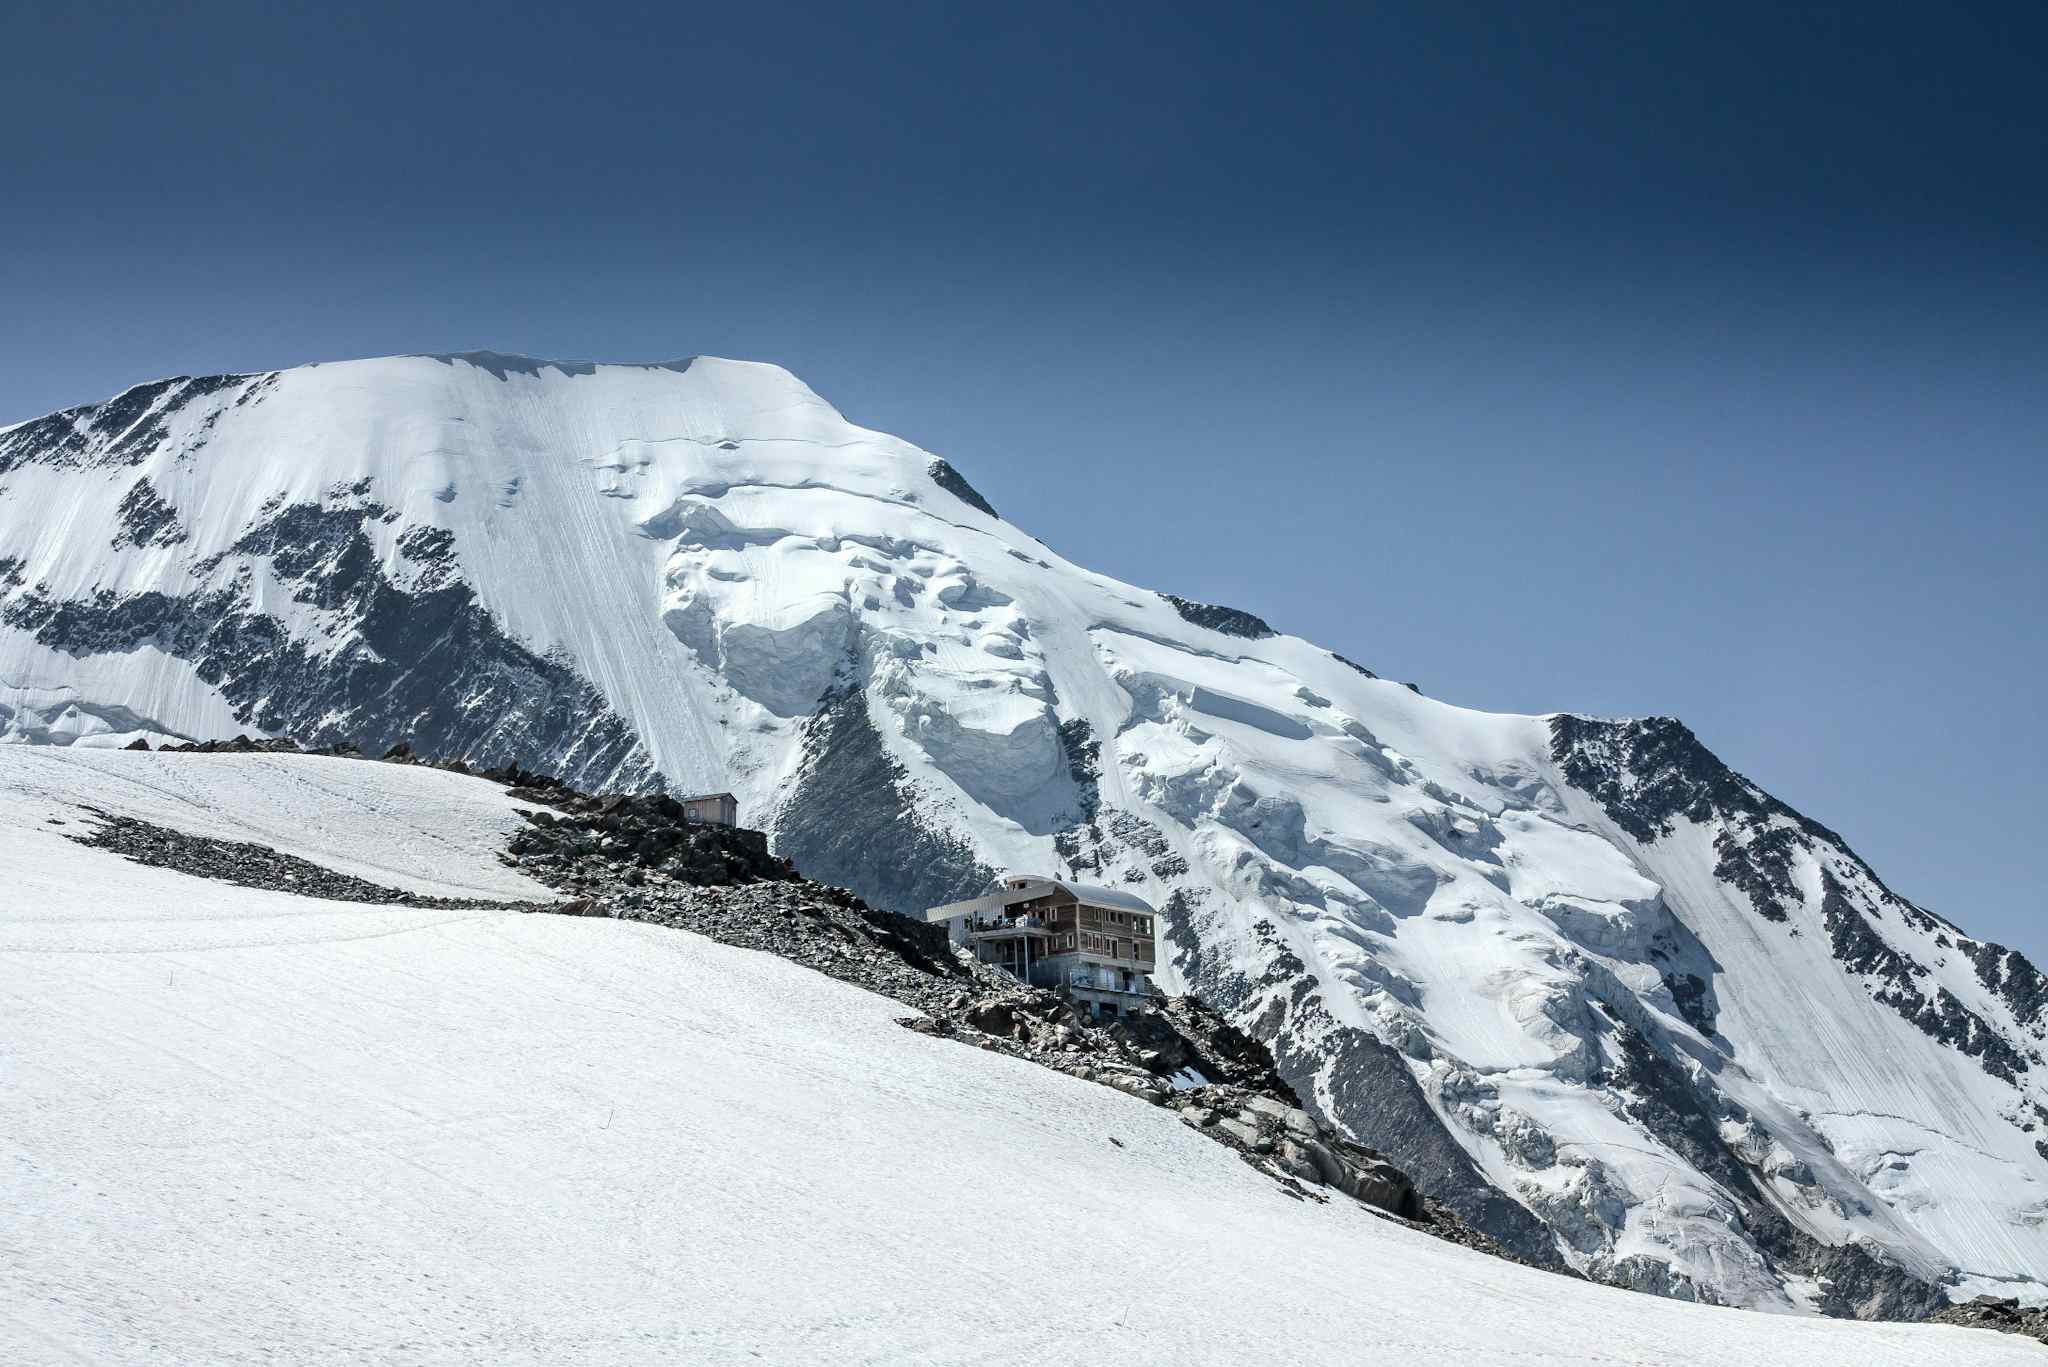 Glacier de Bionnassay and the Tête Rousse refuge, Mont Blanc. Photo: Host/Altai France, Pierre-Antoine Laine